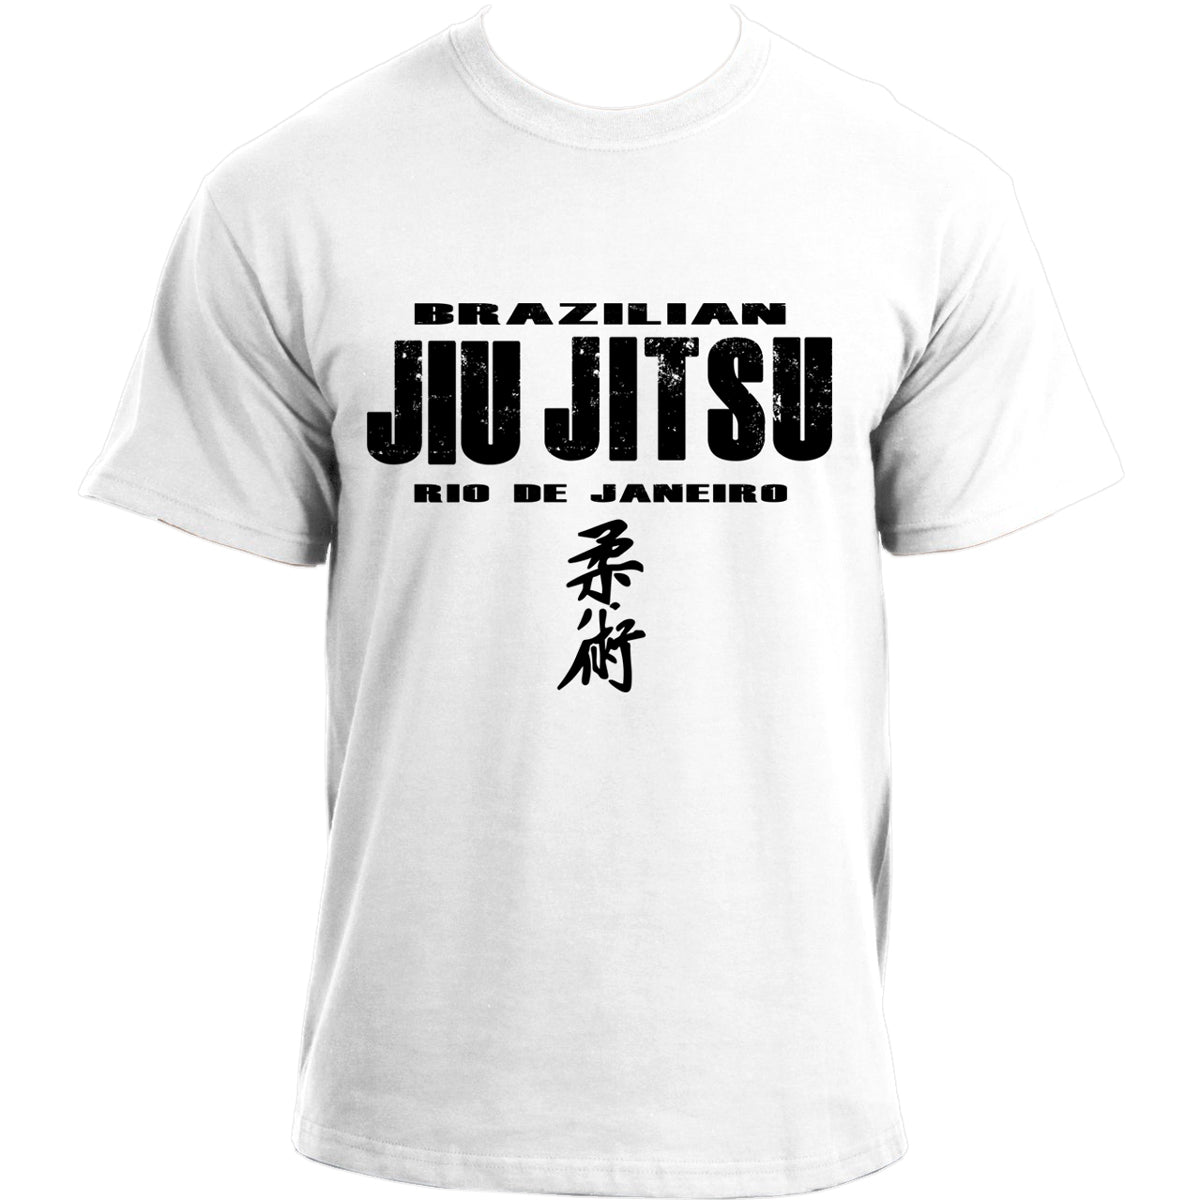 Brazilian Jiu Jitsu Rio de Janeiro MMA UFC BJJ T-shirt